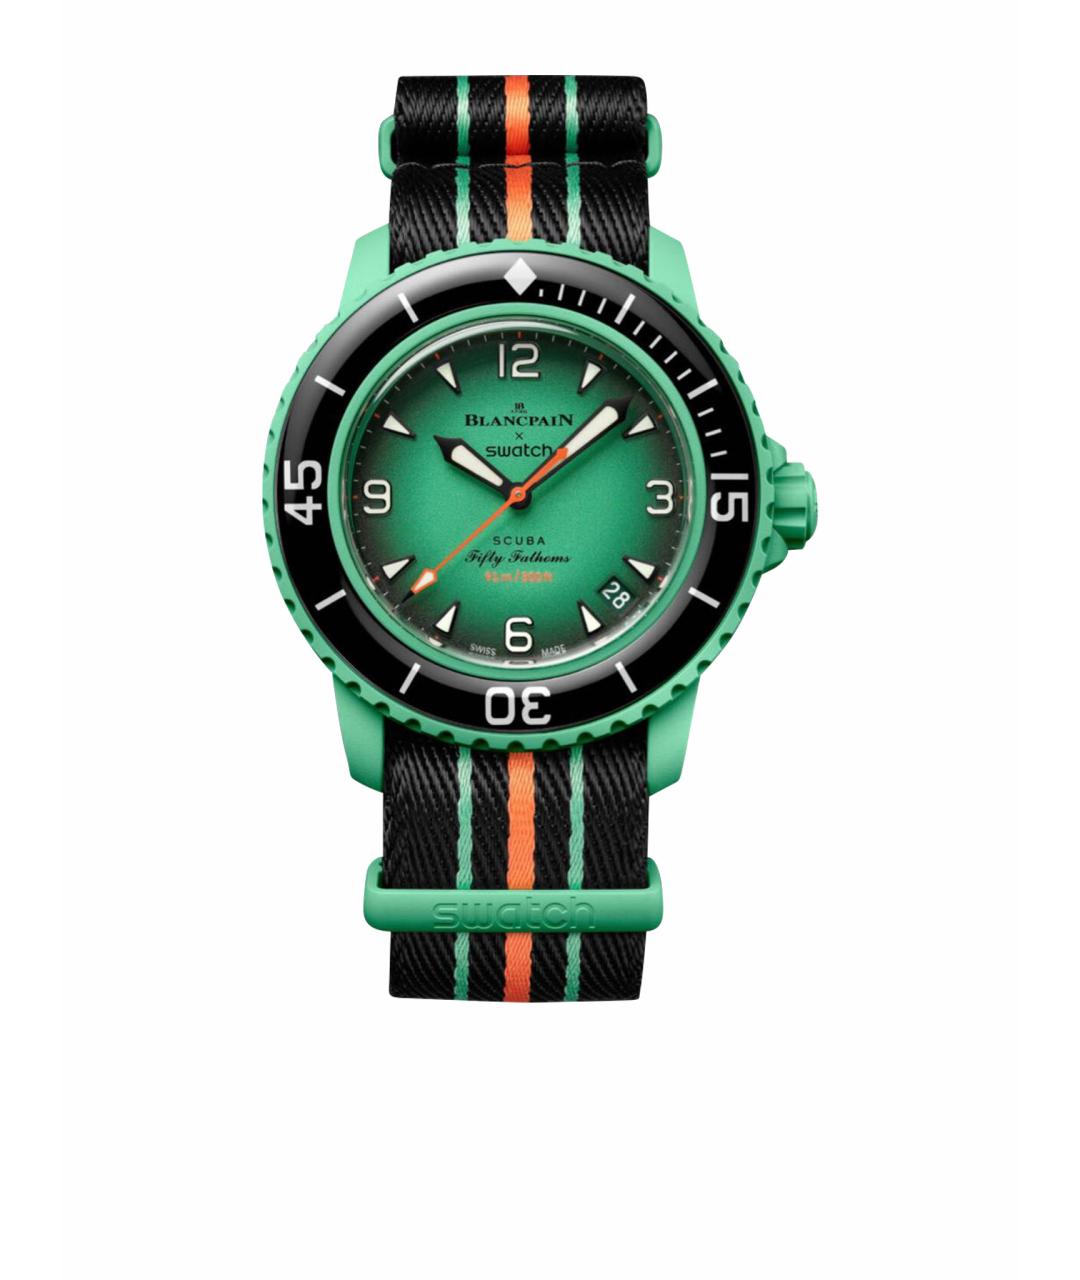 Blancpain Зеленые керамические часы, фото 1